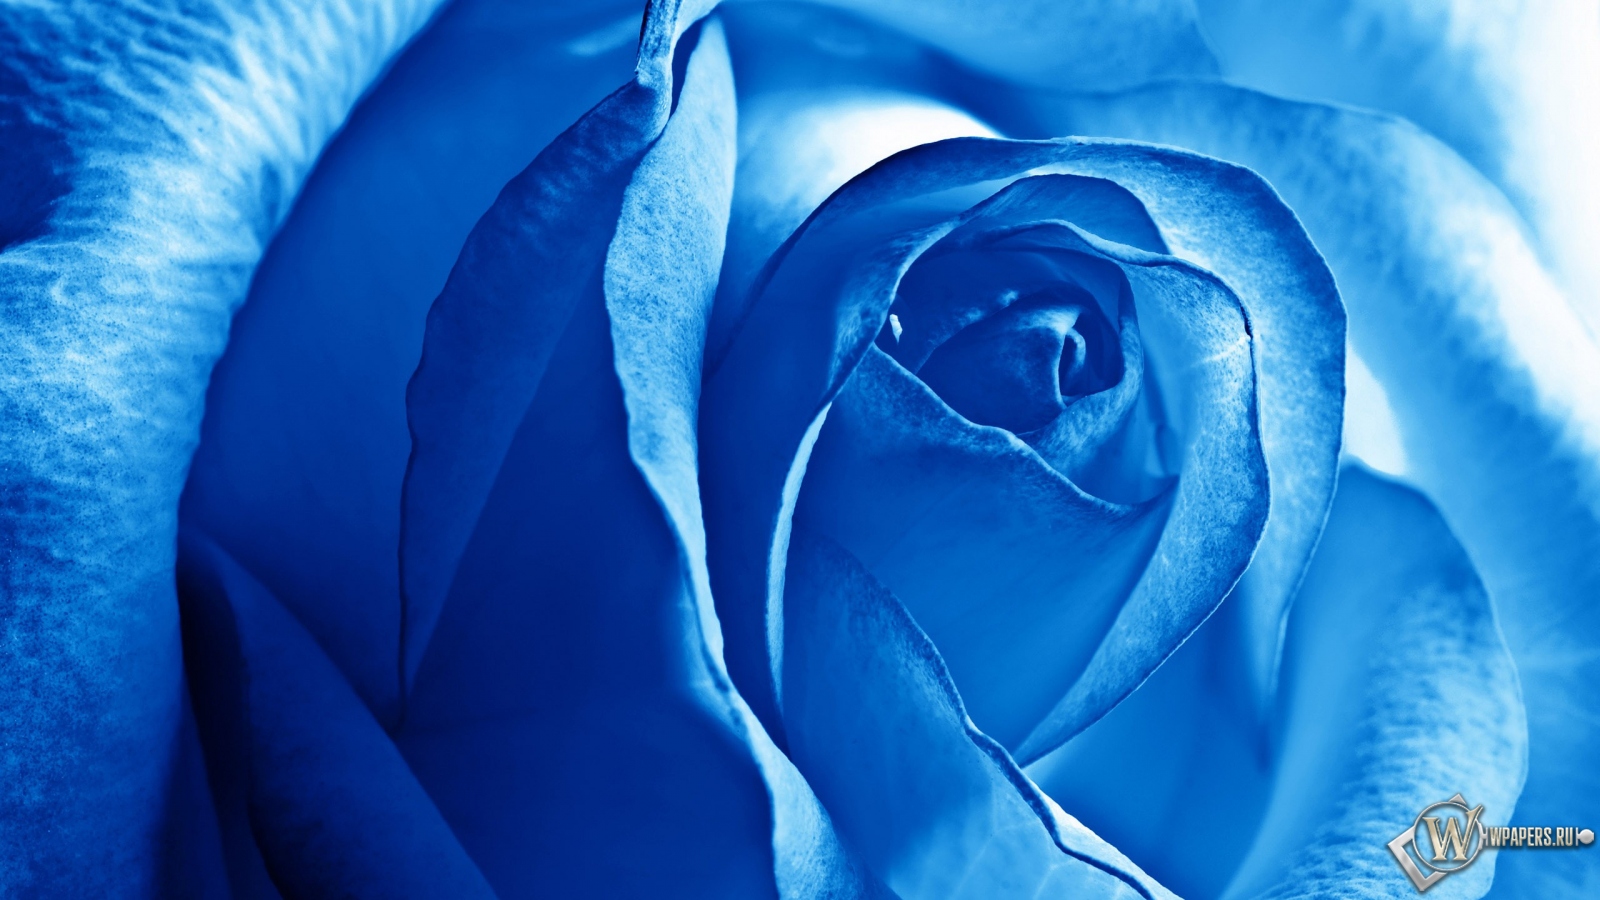 Роза синяя 1600x900